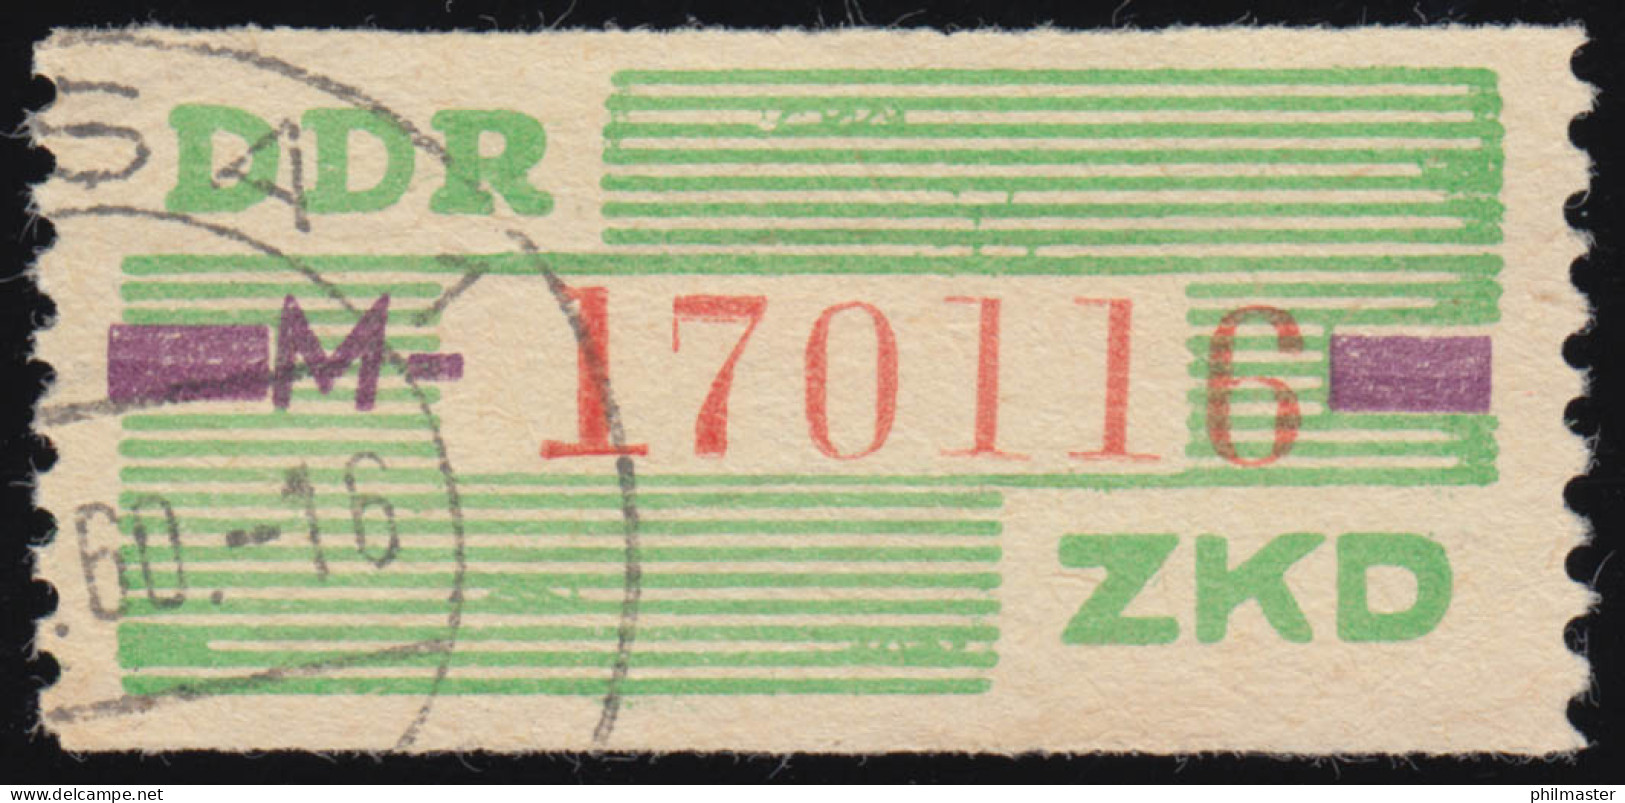 24-M Dienst-B, Billet Rot Auf Grün, Gestempelt - Used